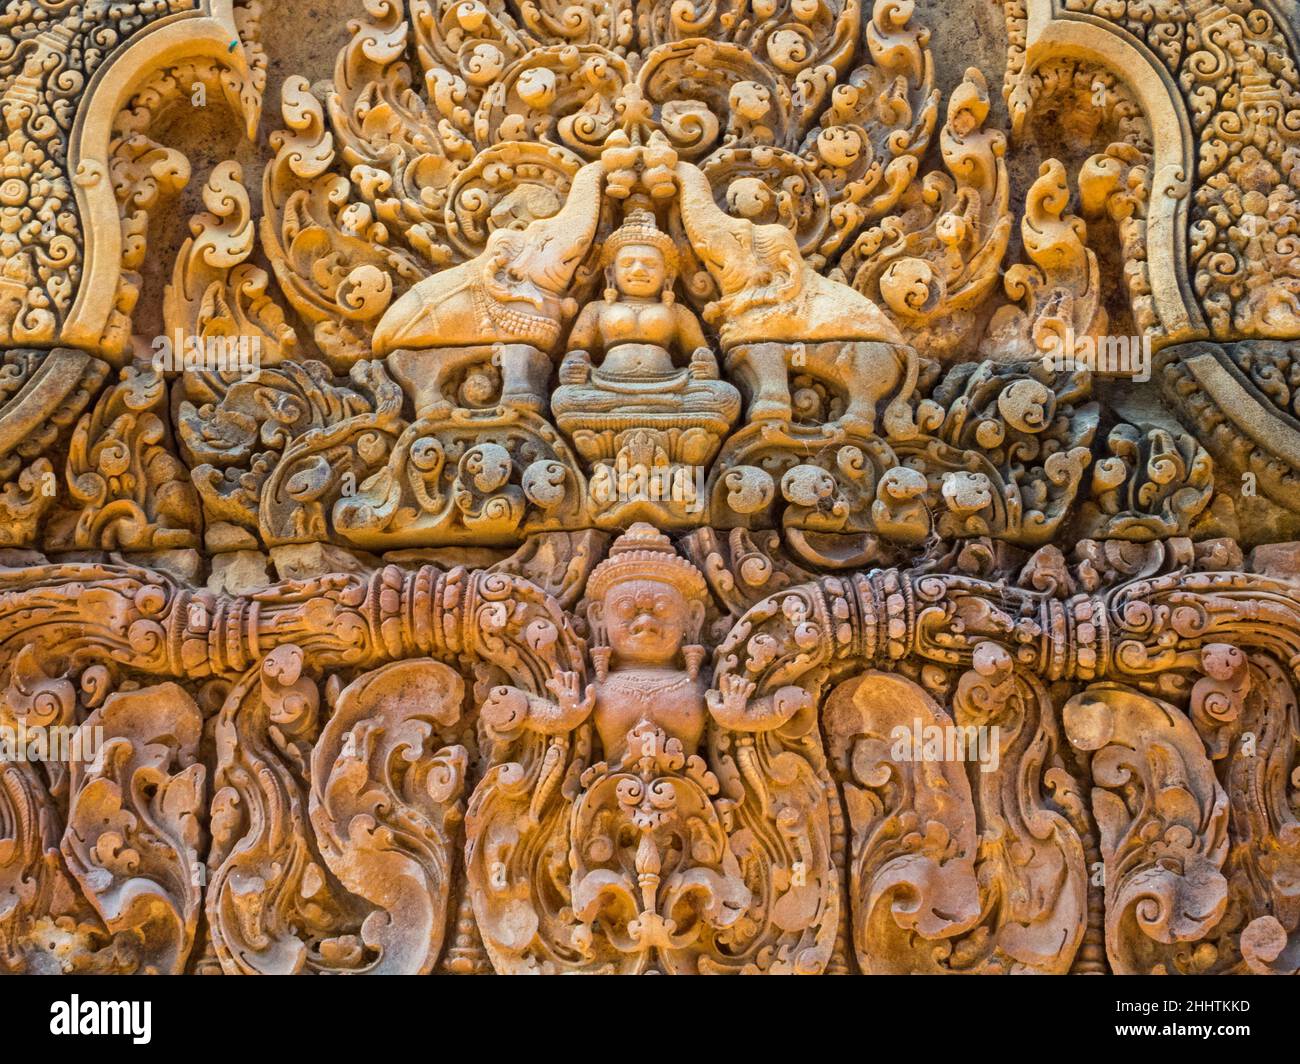 La dea indù Lakshmi su un muro della 'Cittadella delle Donne' - Banteay Srei, Cambogia Foto Stock